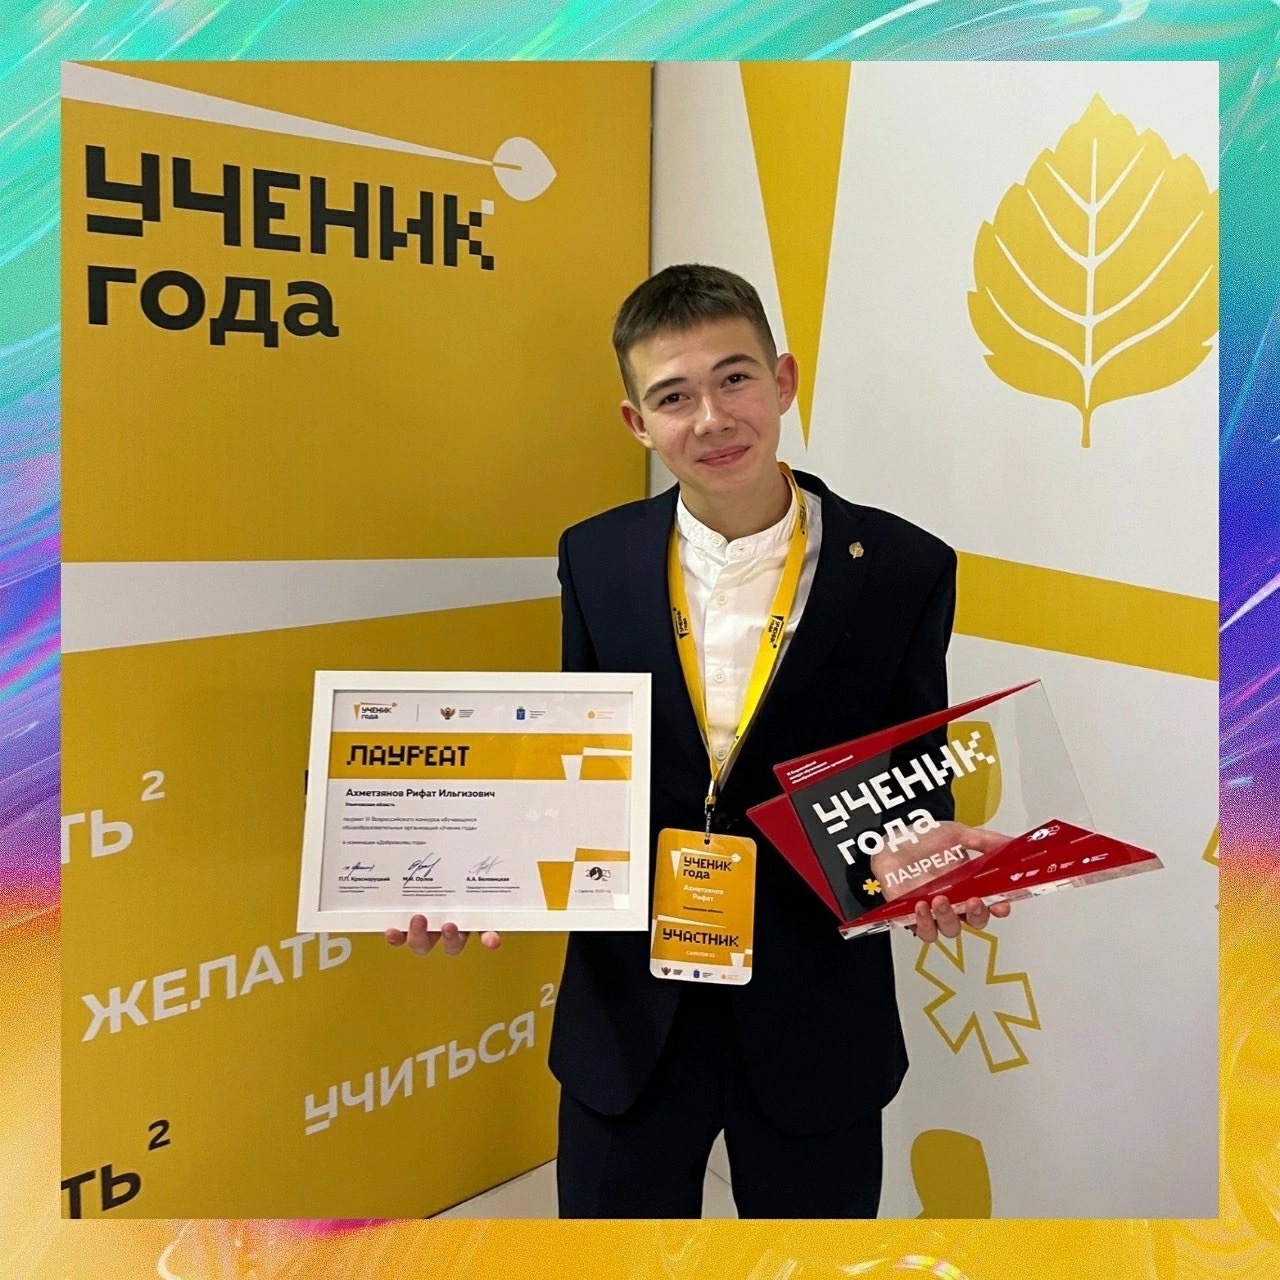 Поздравляем Рифата Ахметзянова с успешным участием во всероссийских конкурсах!.